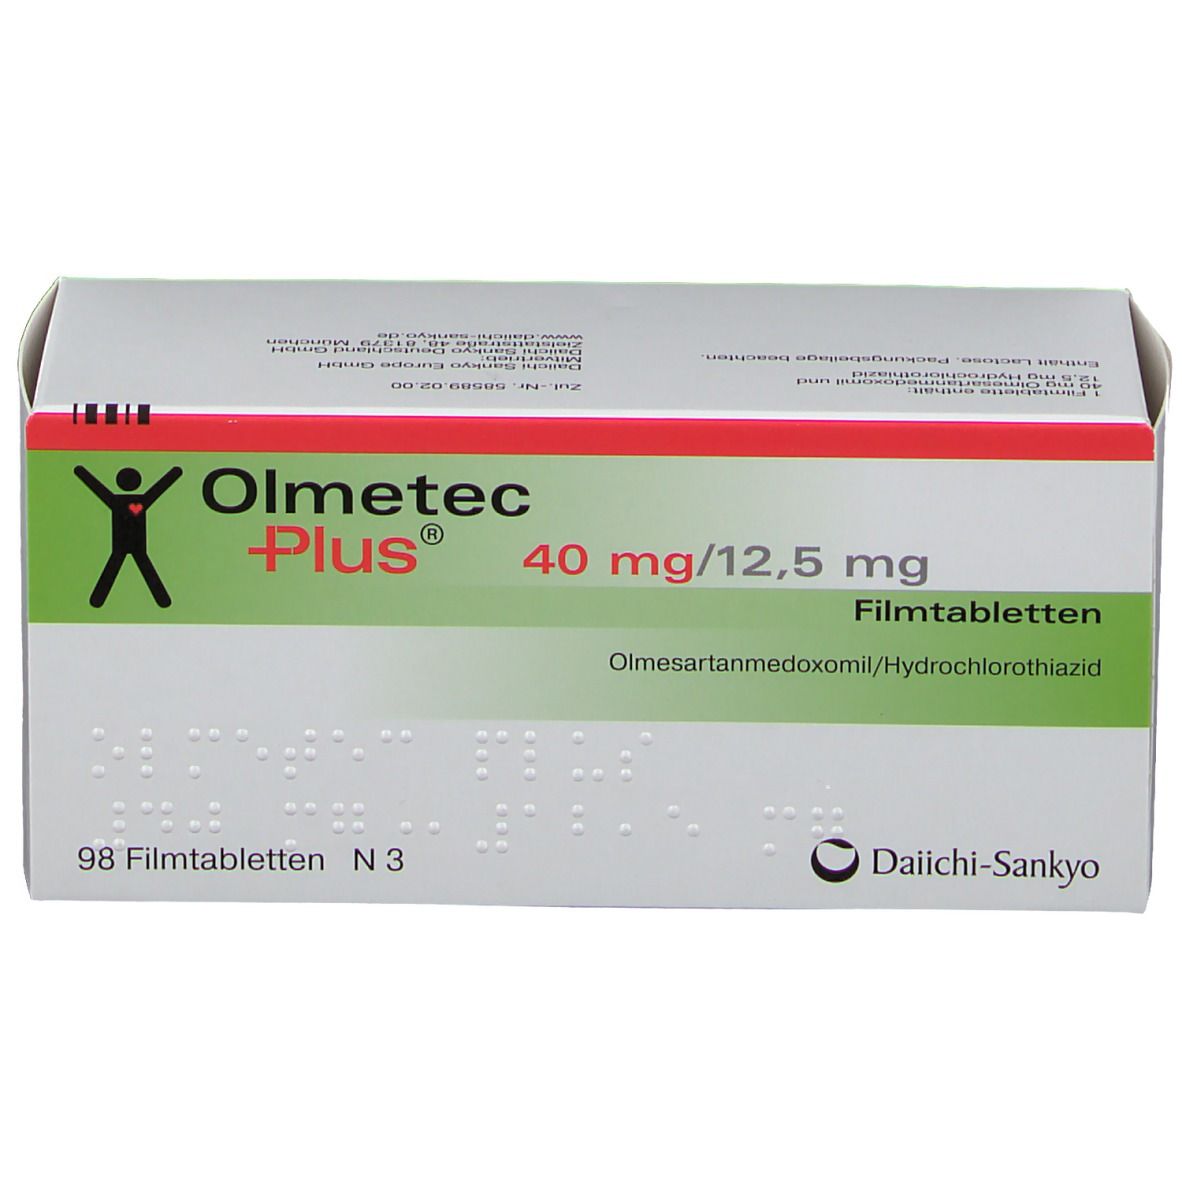 Olmetec Plus® 40 mg/12,5 mg